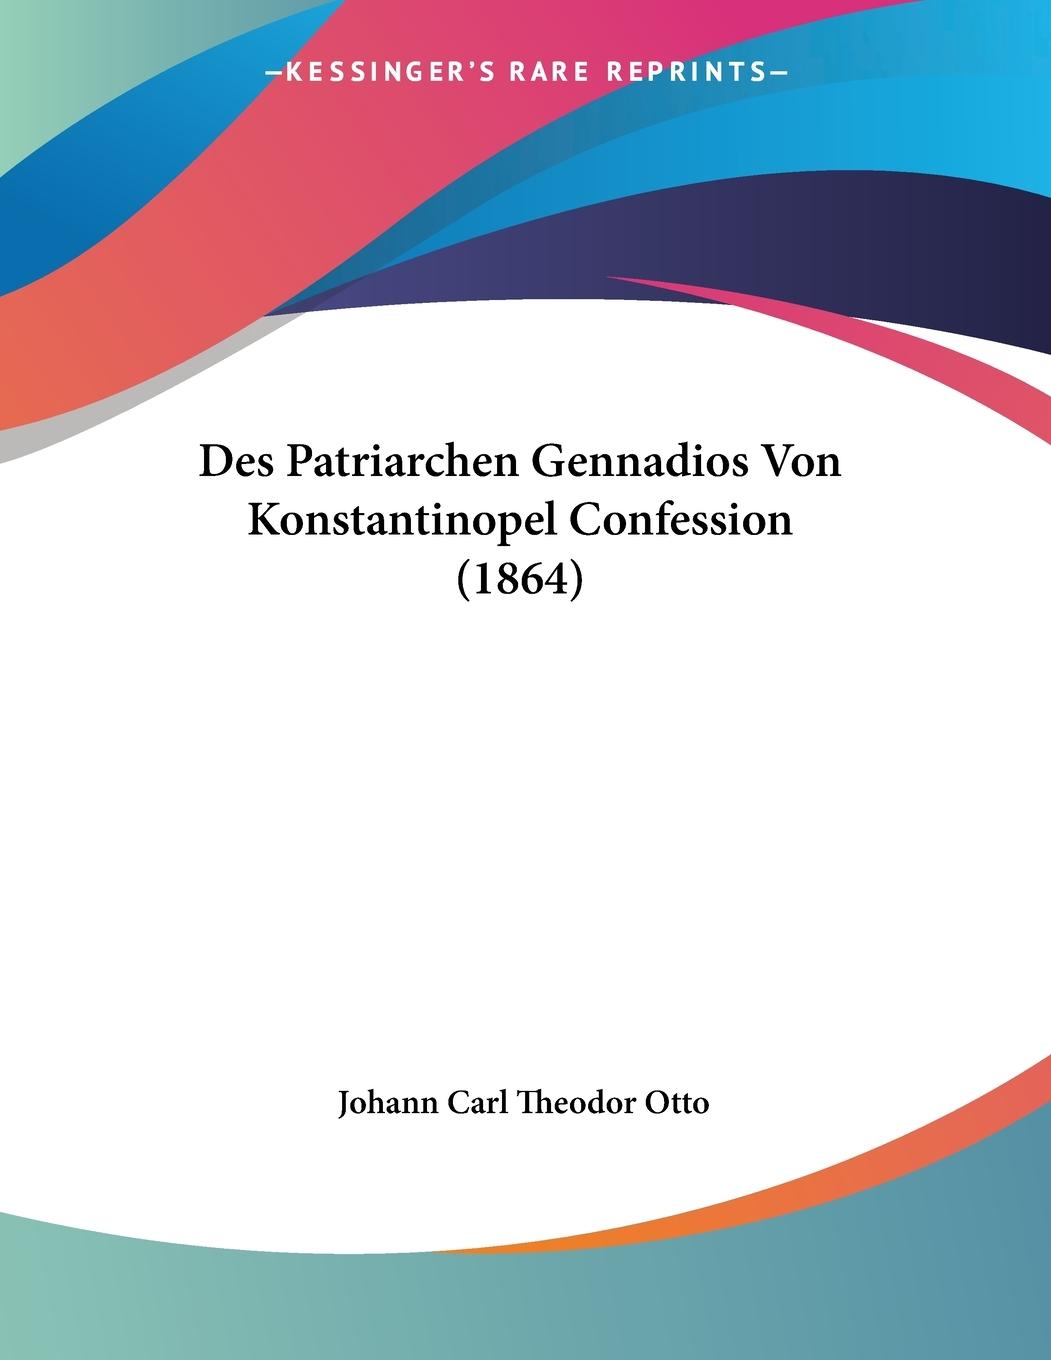 Des Patriarchen Gennadios Von Konstantinopel Confession (1864)